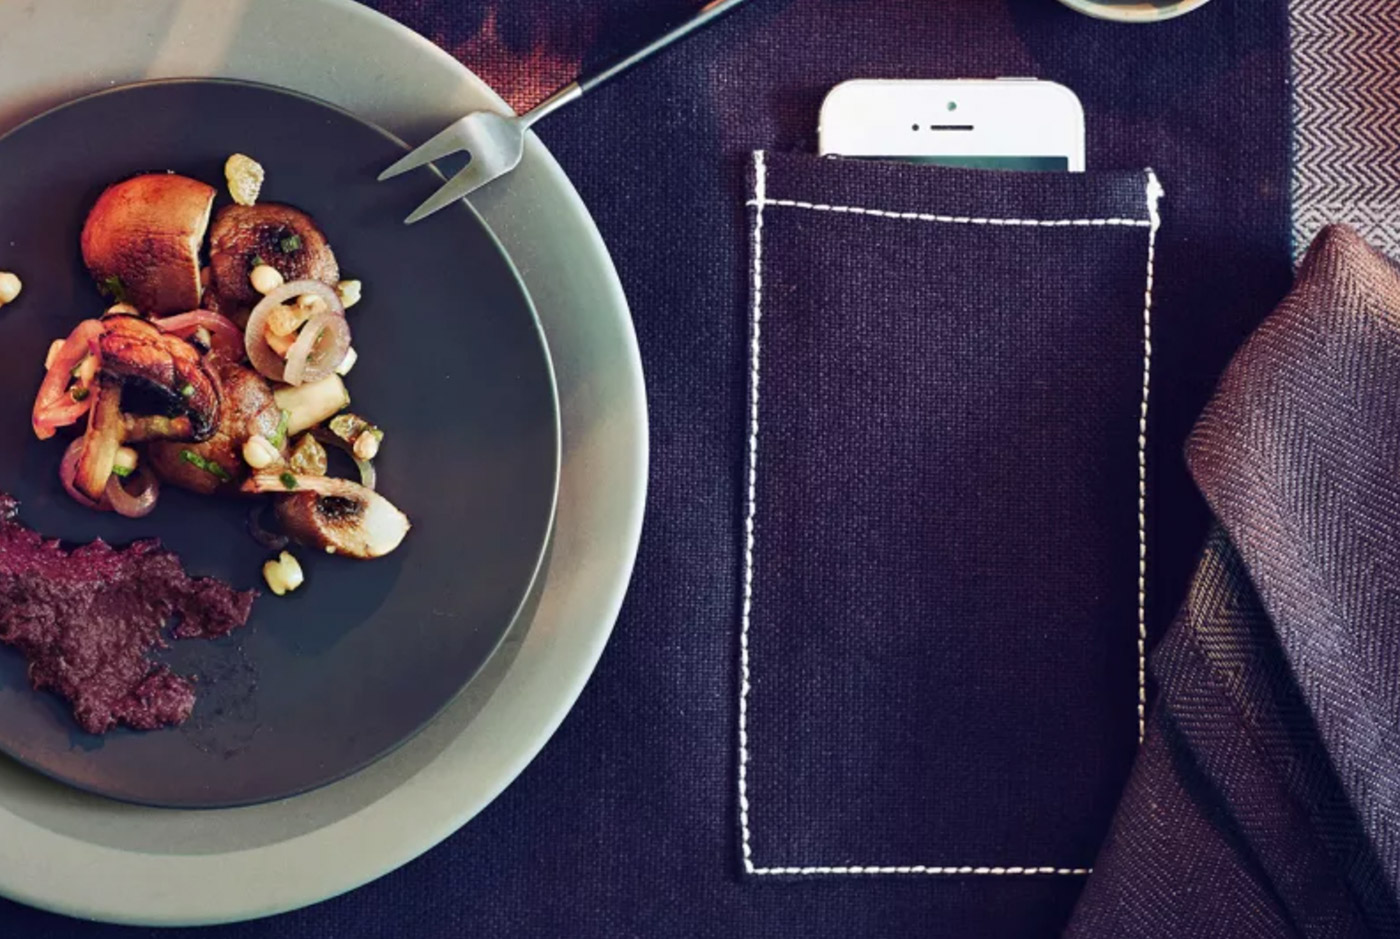 Ikea ha ideato una tovaglietta con tasca per coprire lo smartphone a tavola